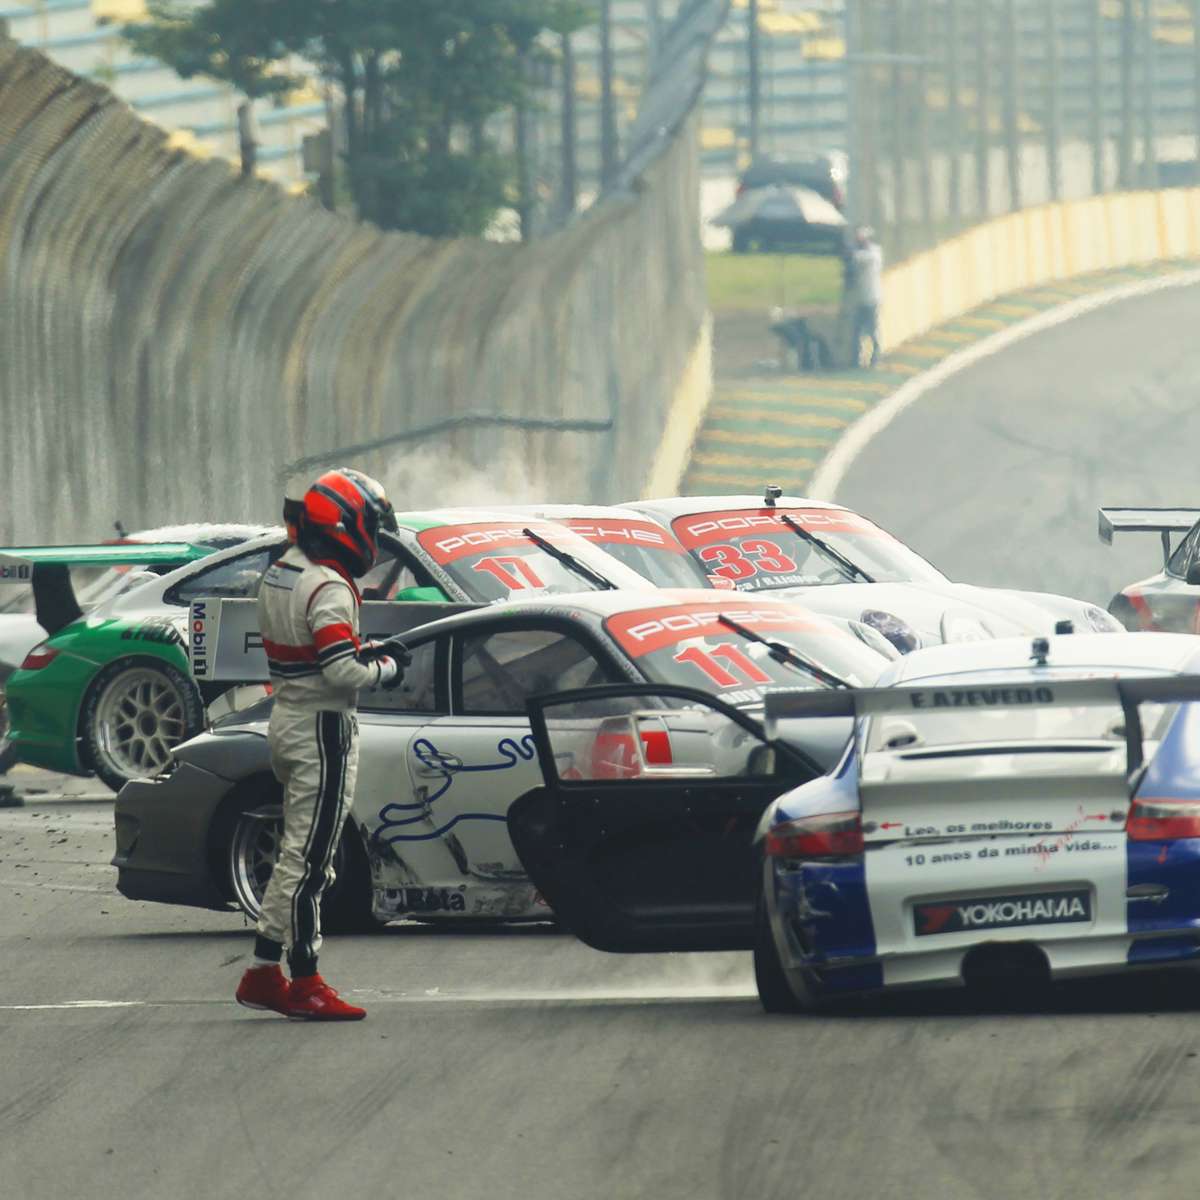 Concurso da Bamaq irá premiar com volta de Porsche GT3 em Interlagos